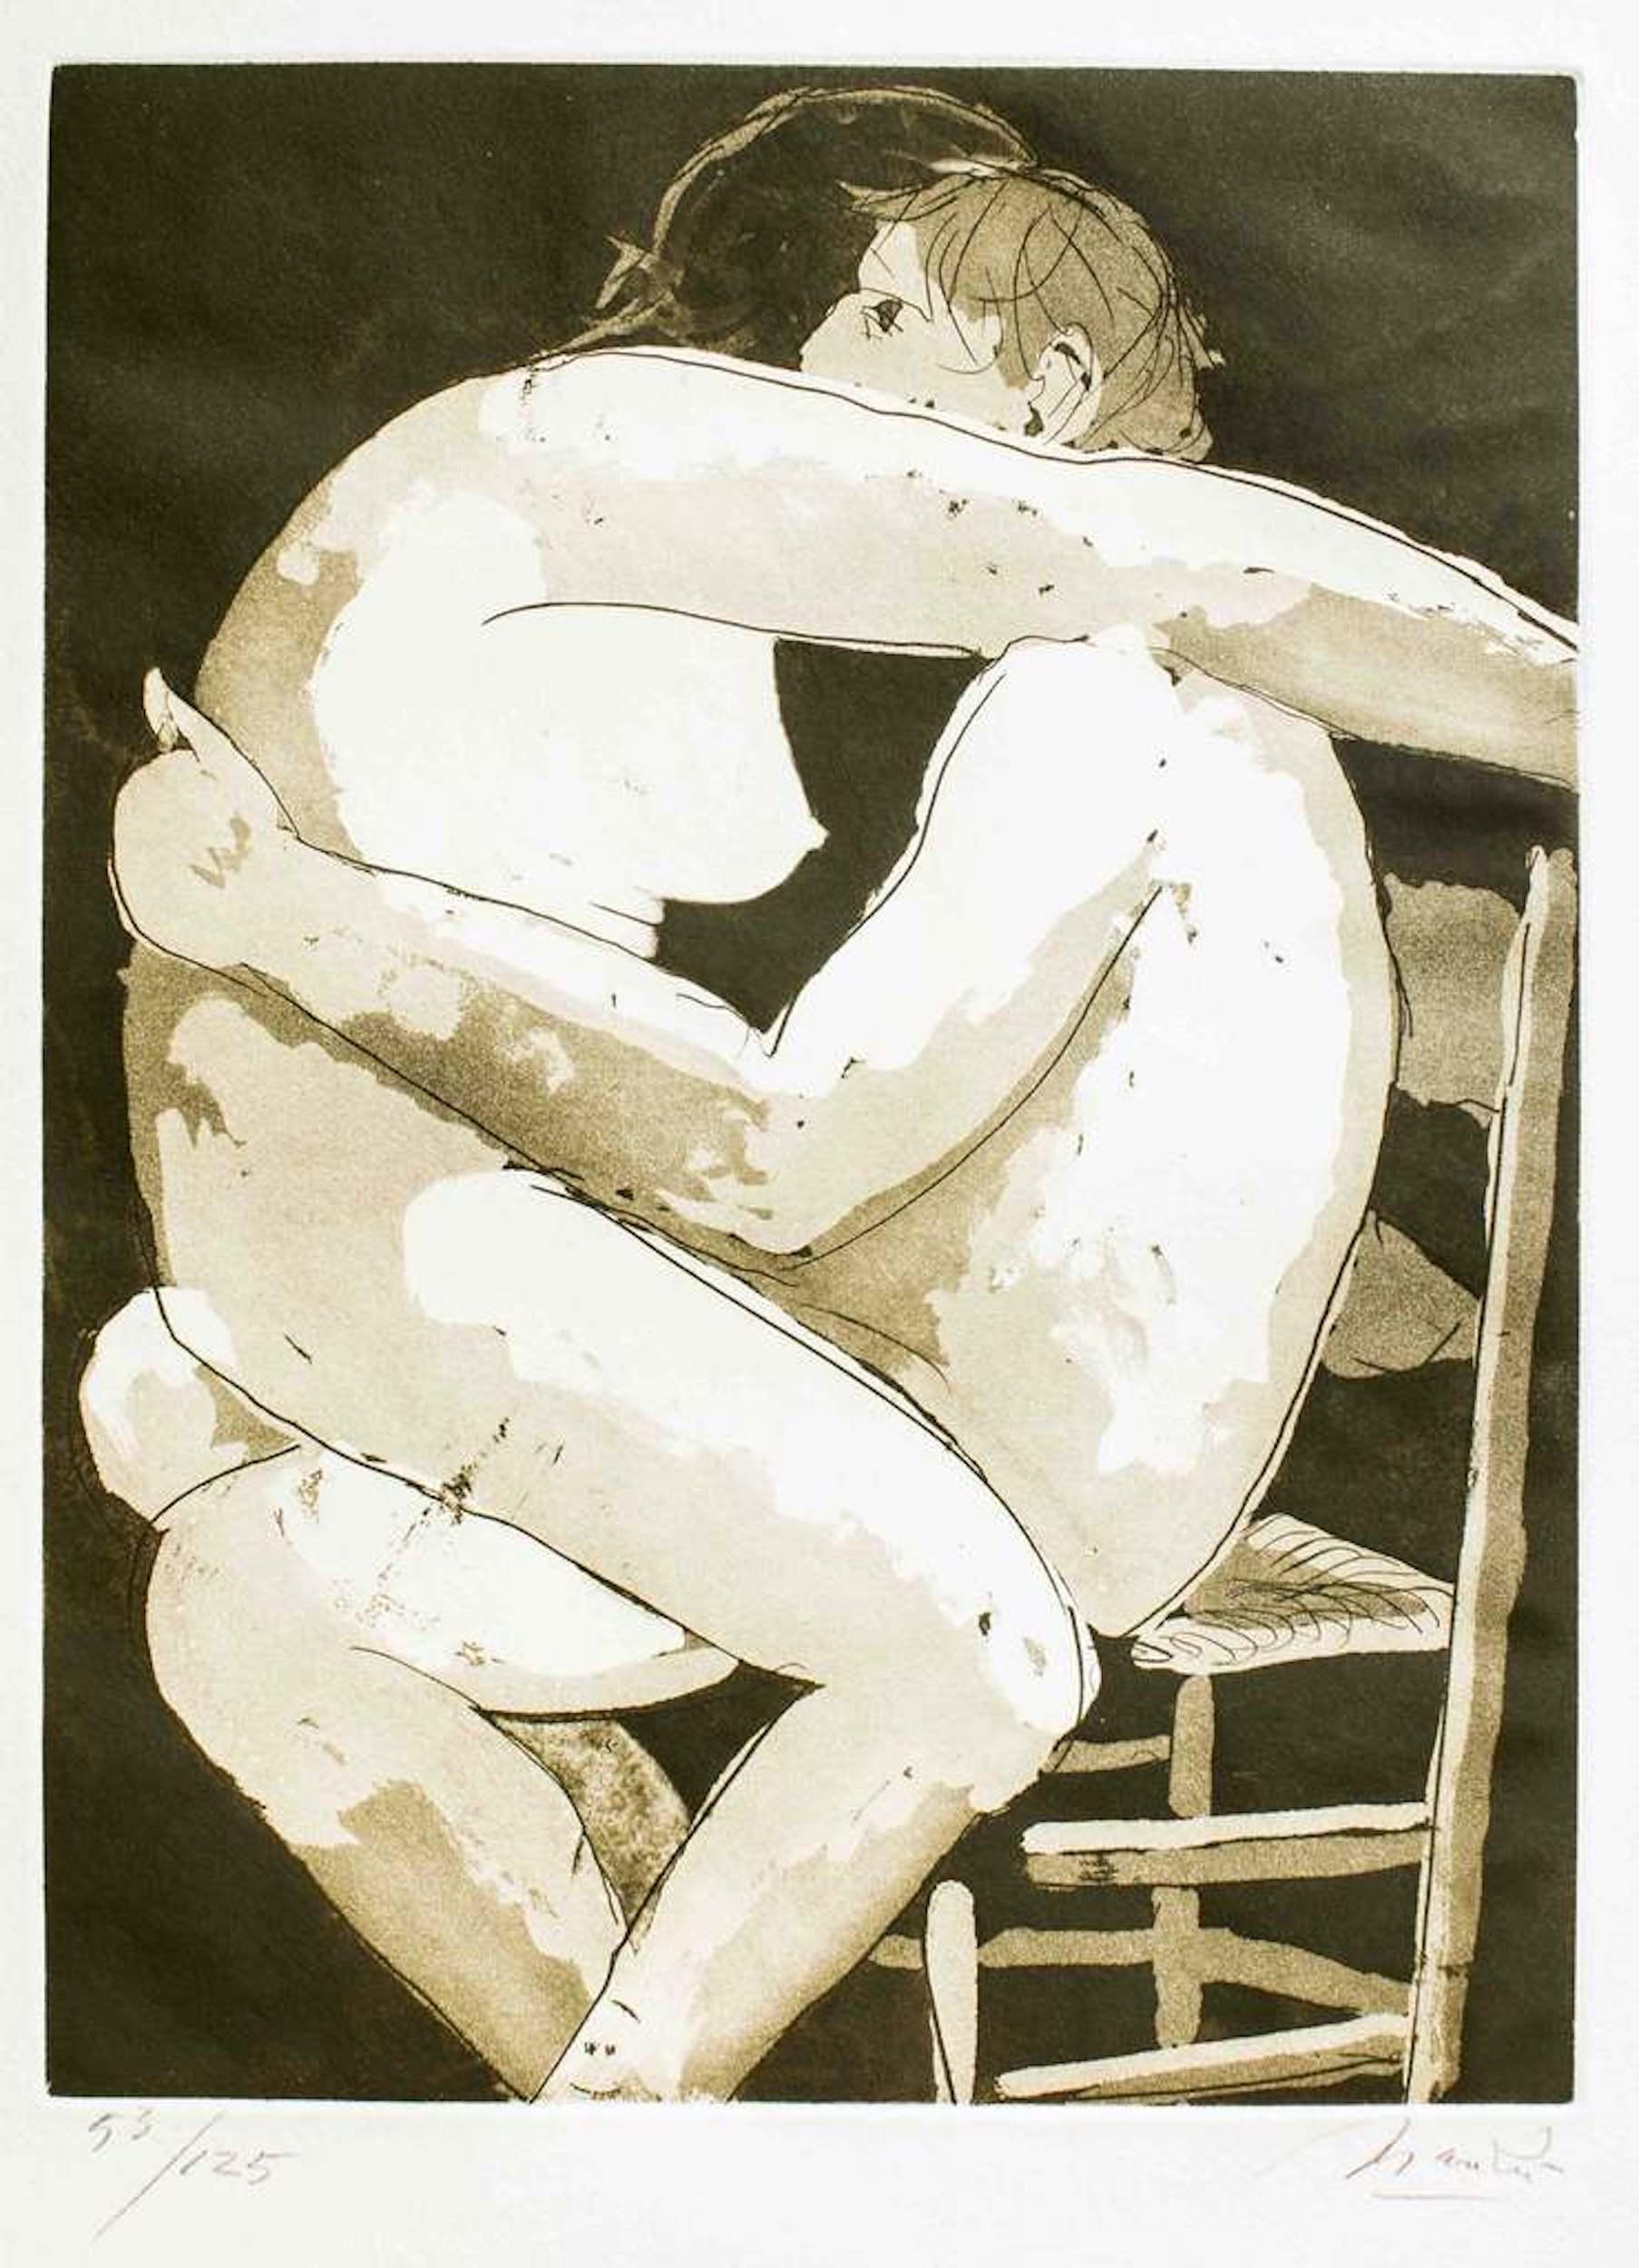 Giacomo Manzú Figurative Print - Lovers I - Original Etching by Giacomo Manzù - 1970